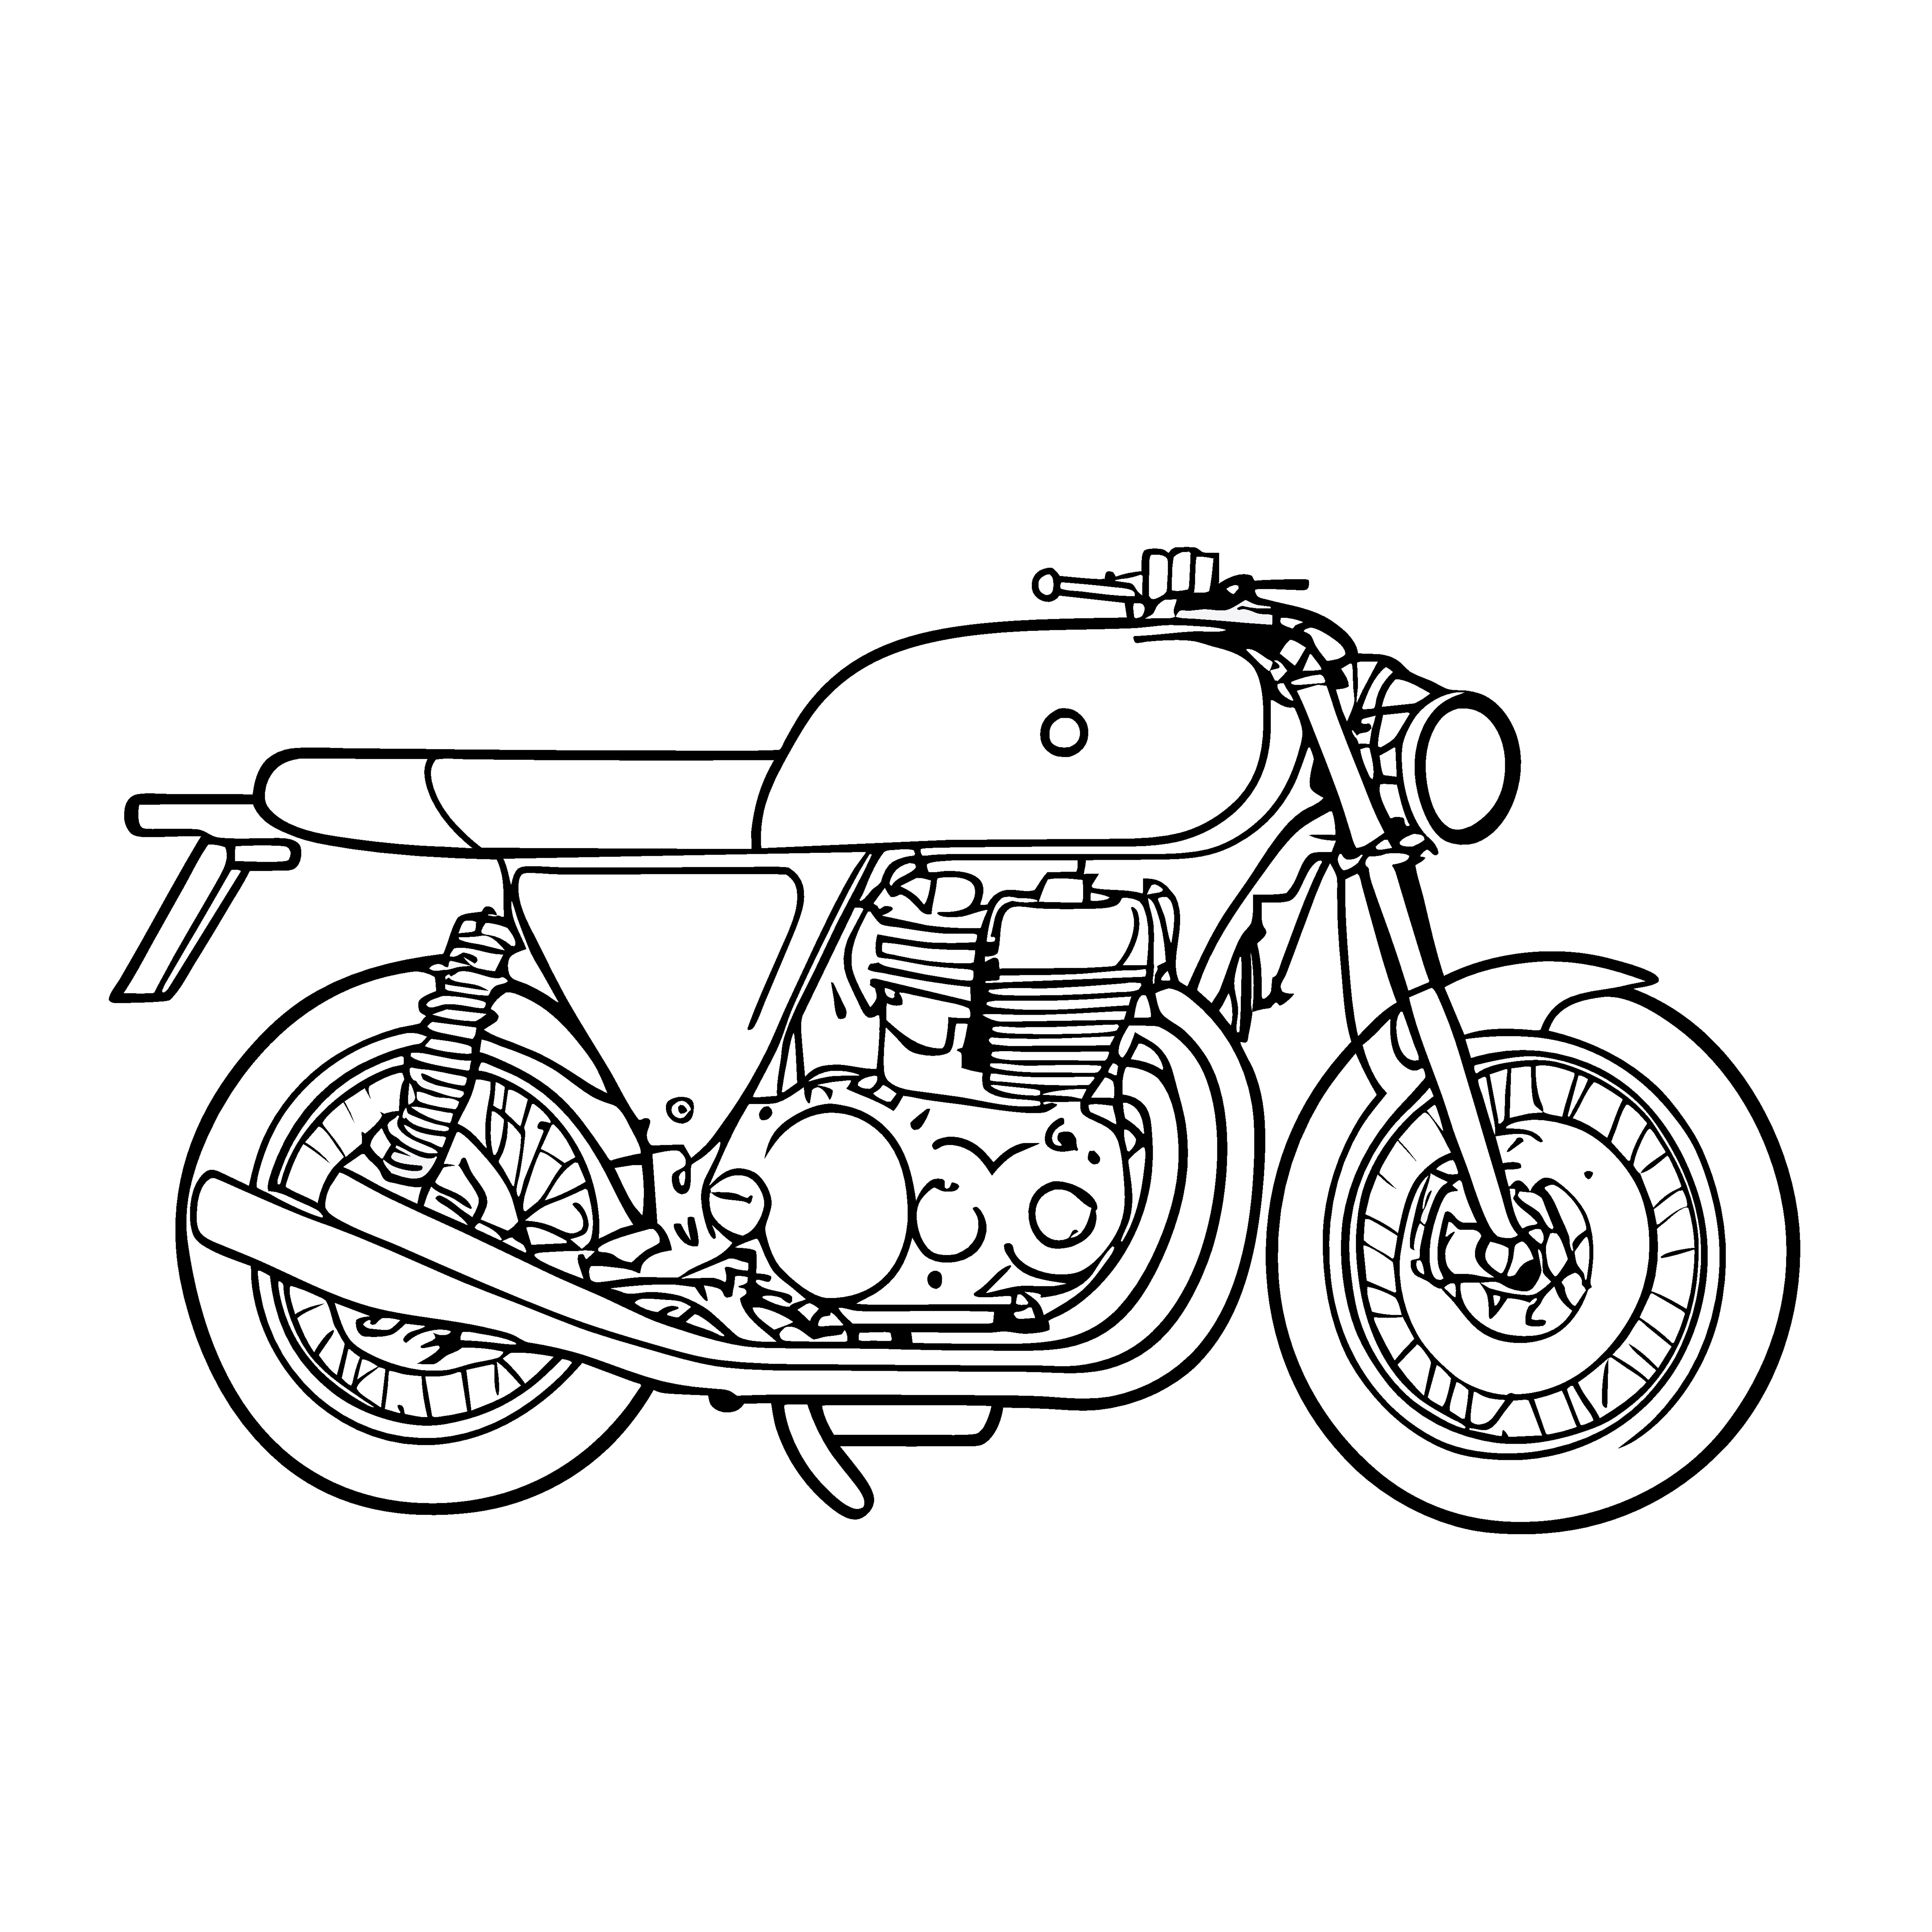 Раскраска мотоцикл «Восход» формата А4 в высоком качестве